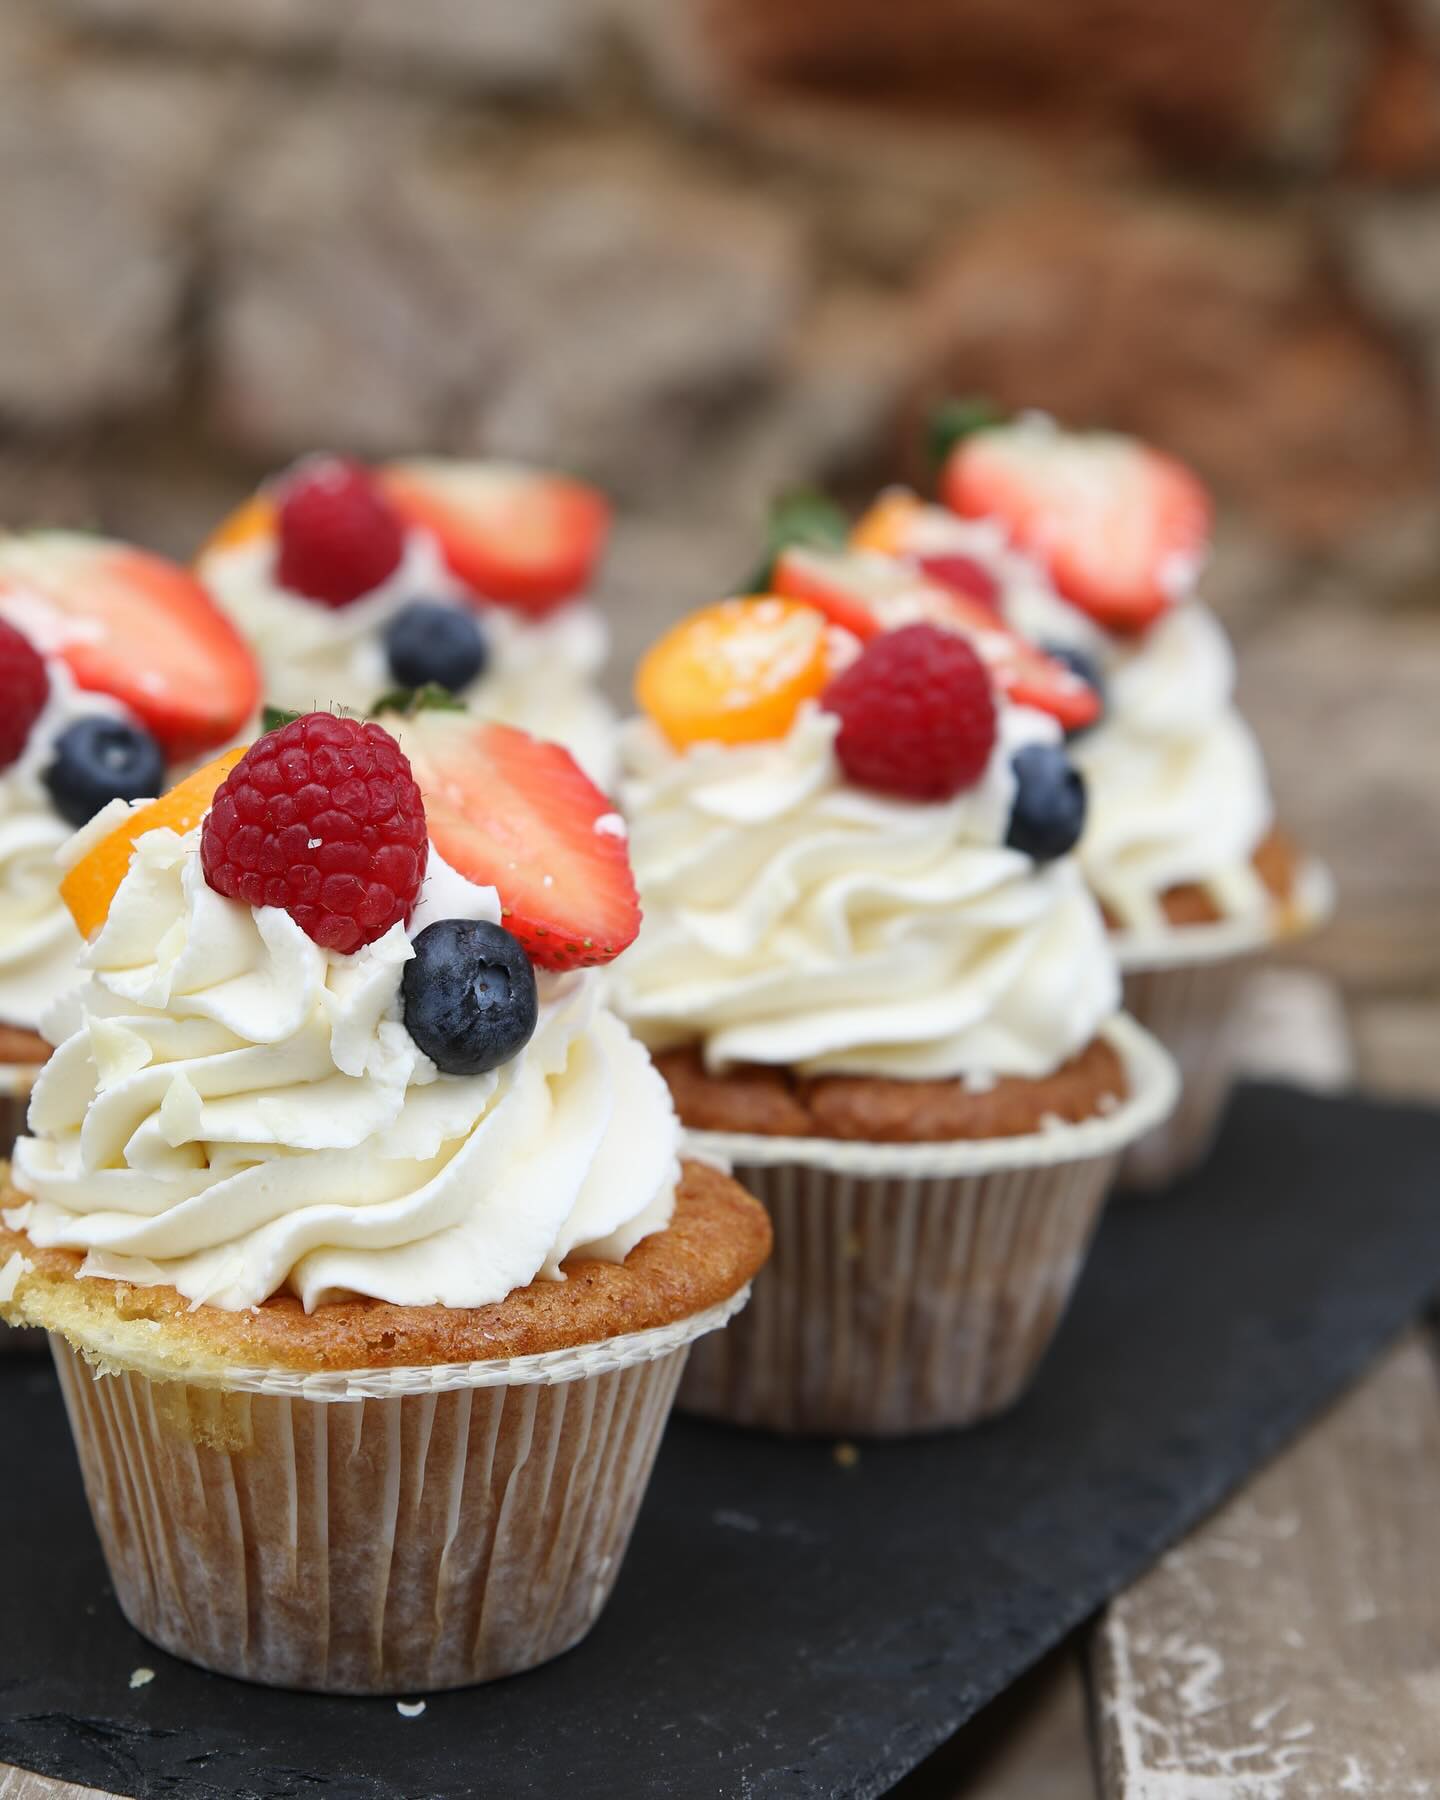 Adelčiny cupcakes z bezlepkové mouky a sezonním ovocem????????

#cupcakes #fruit #jaro #kavarna #tritecky #skodanezajit